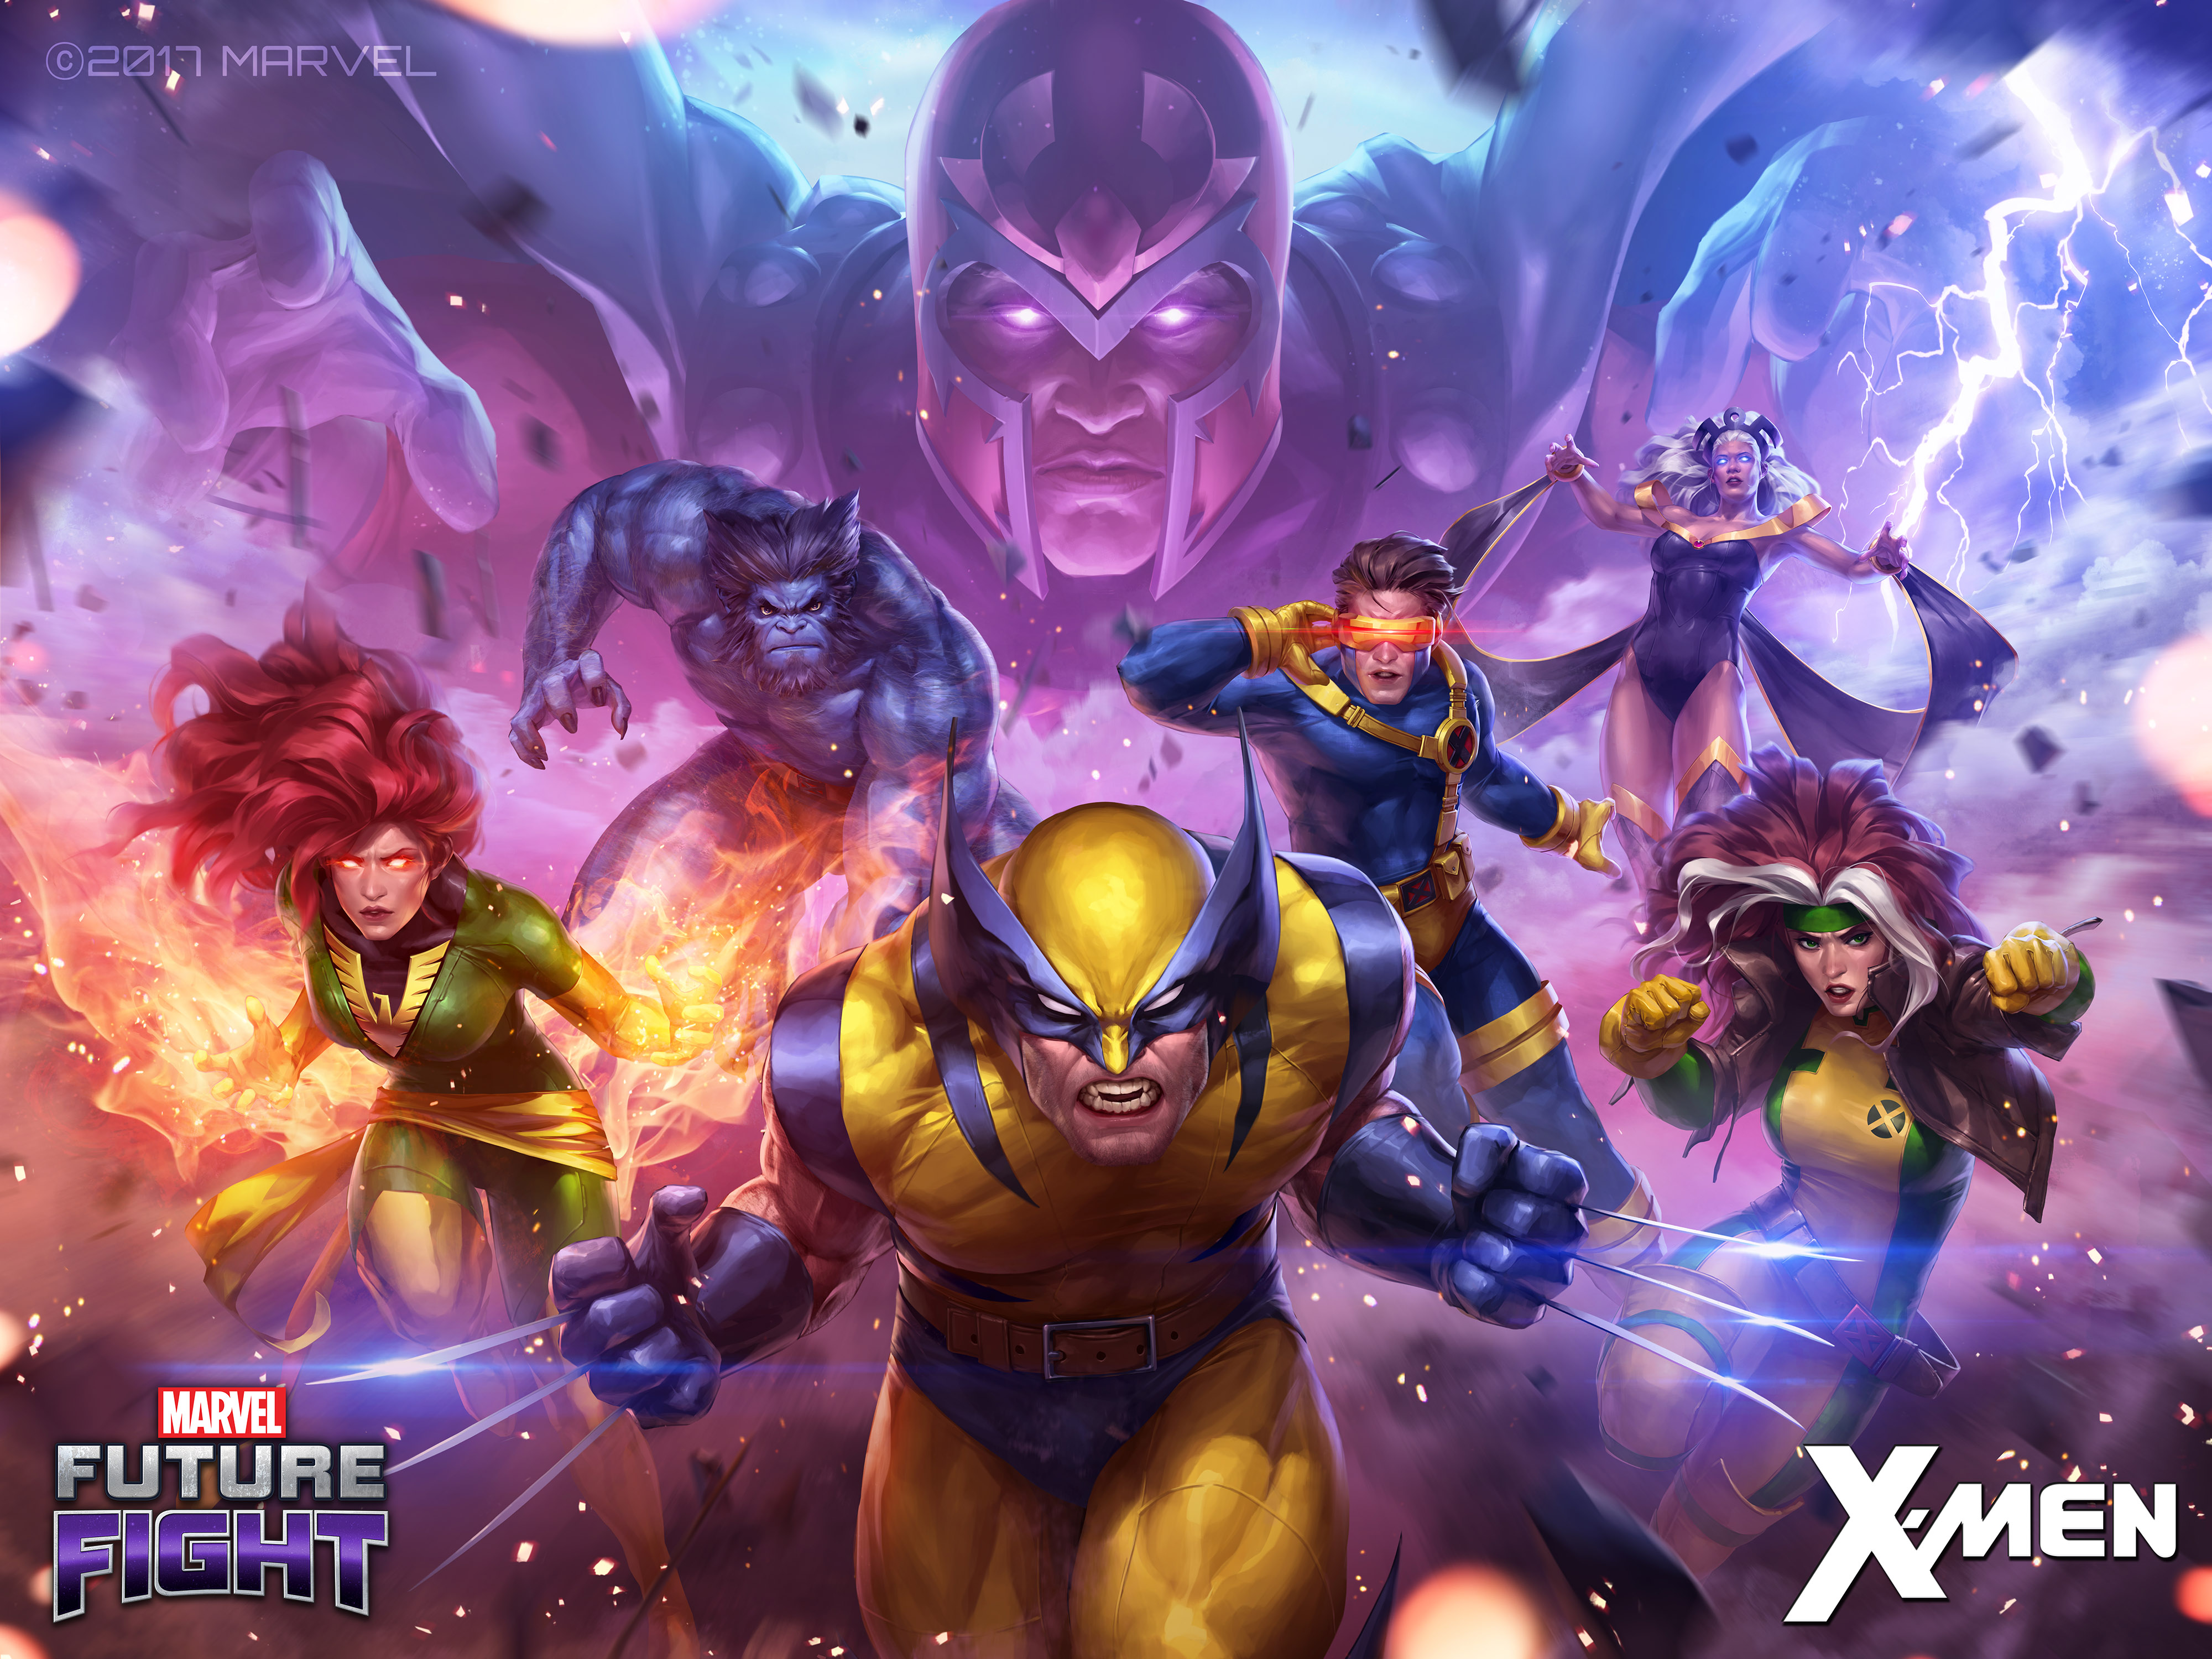 Beast Marvel Comics Cyclops Marvel Comics Marvel Comics Storm Marvel Comics Wolverine 4000x3000